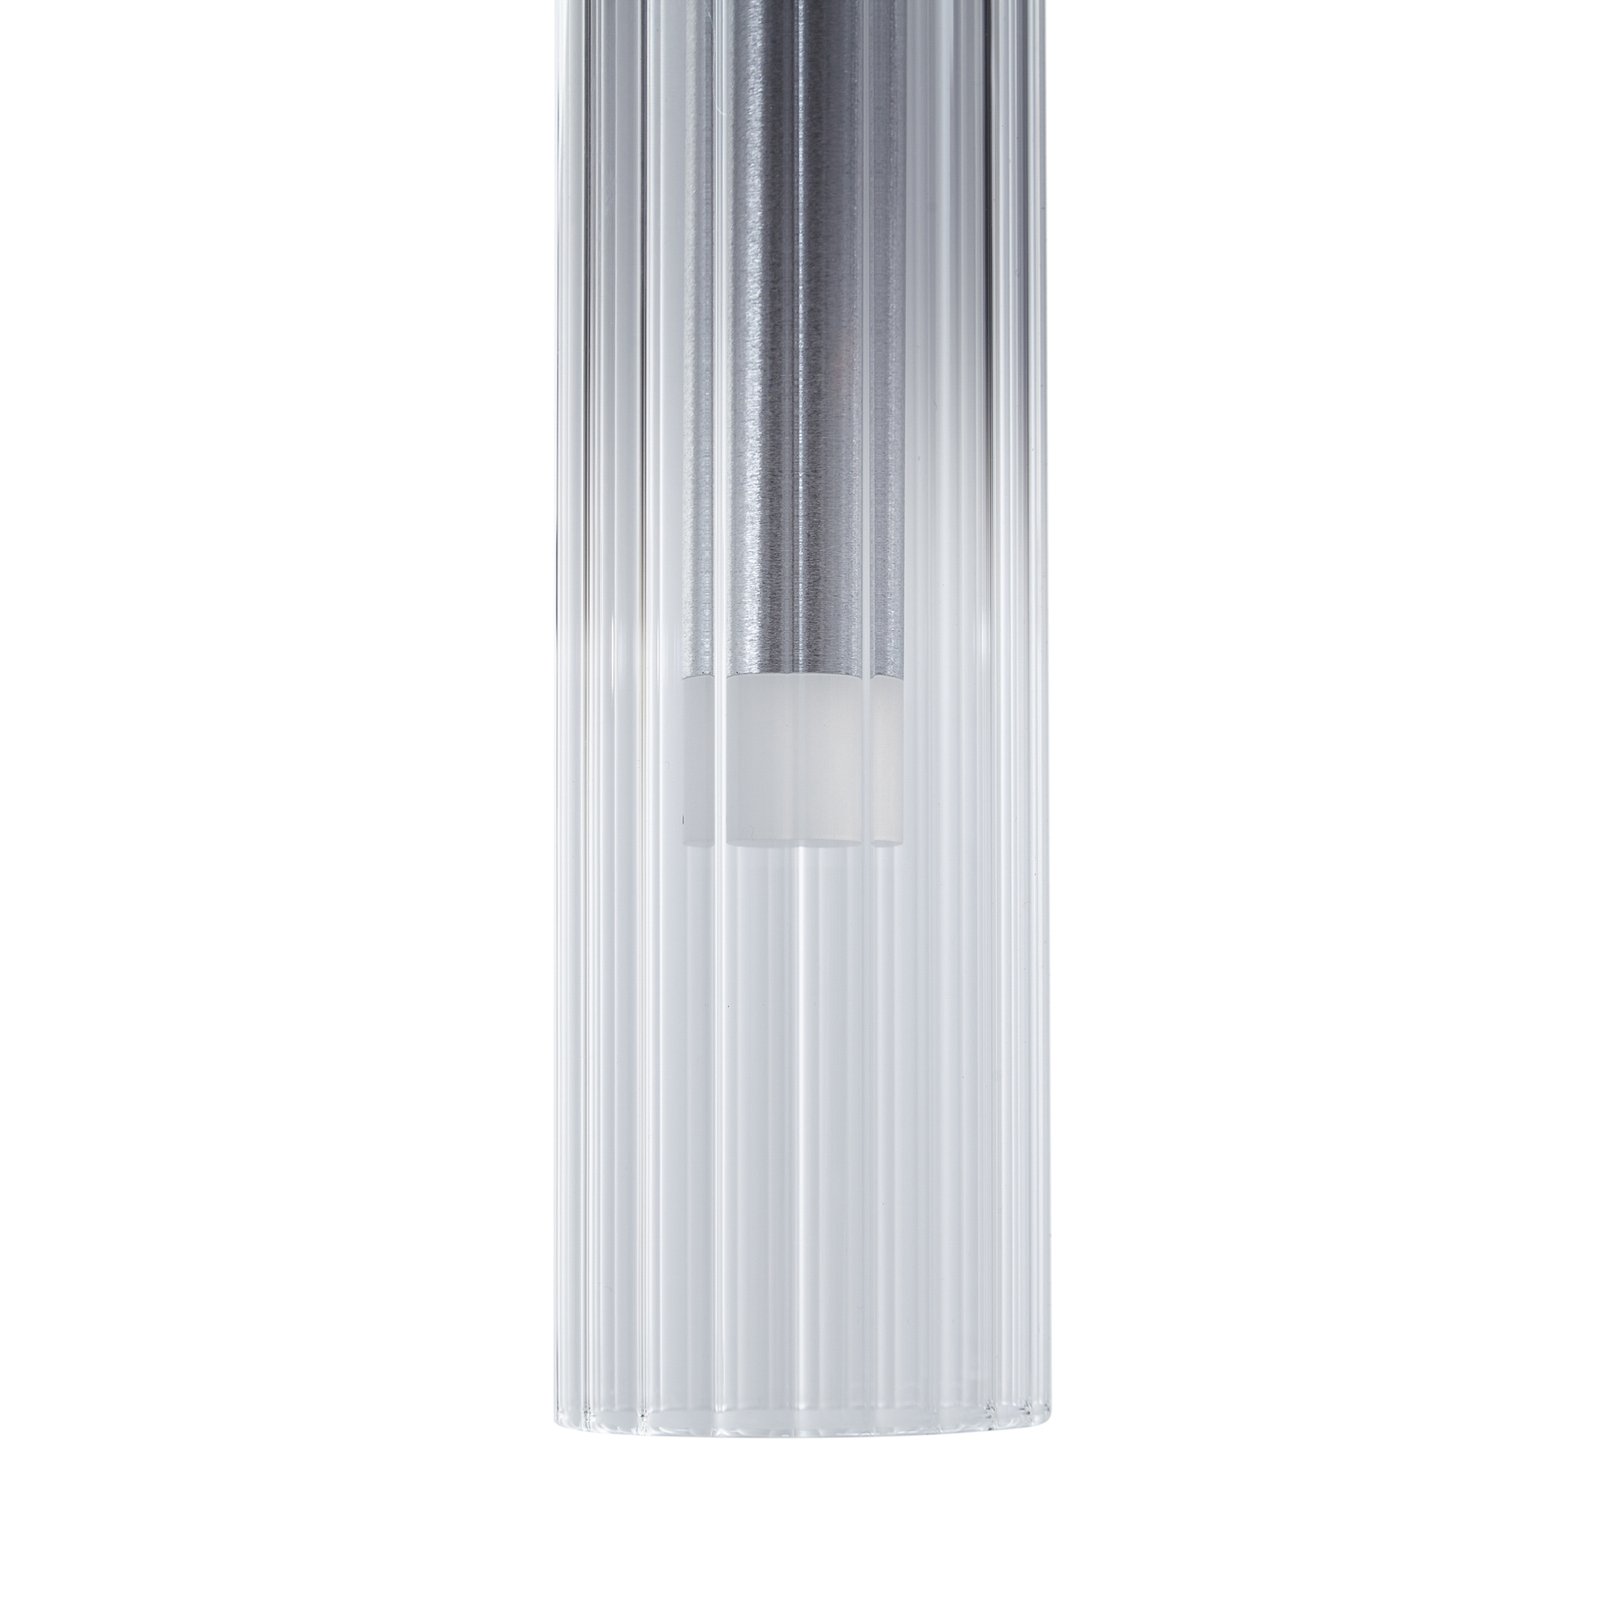 Lucande LED ceiling light Korvitha, 8-bulb, grey, glass